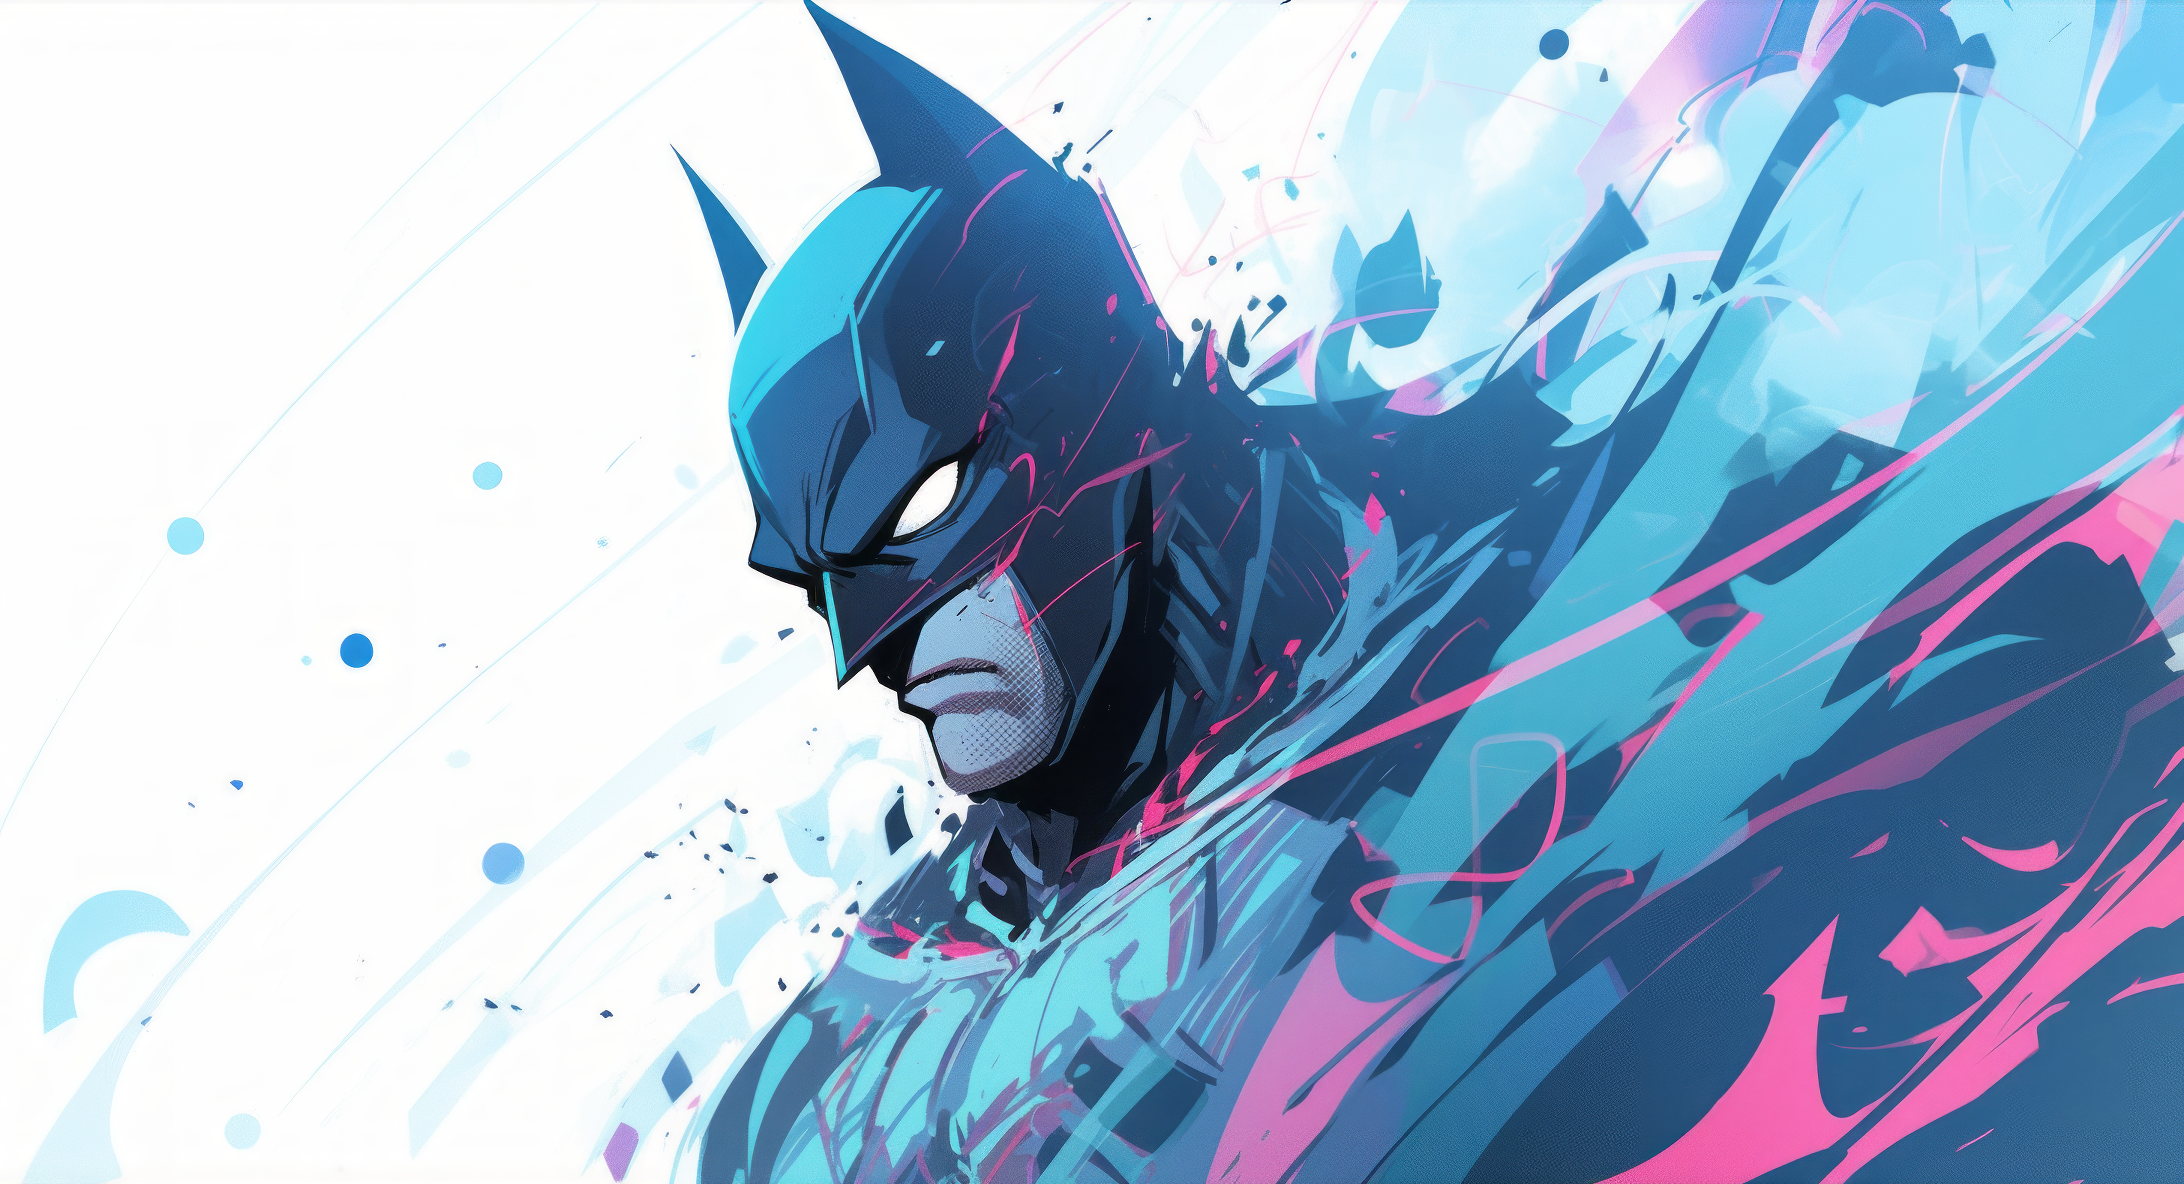 Batman dc comics hd wallpaper - HQ Desktop Wallpapers